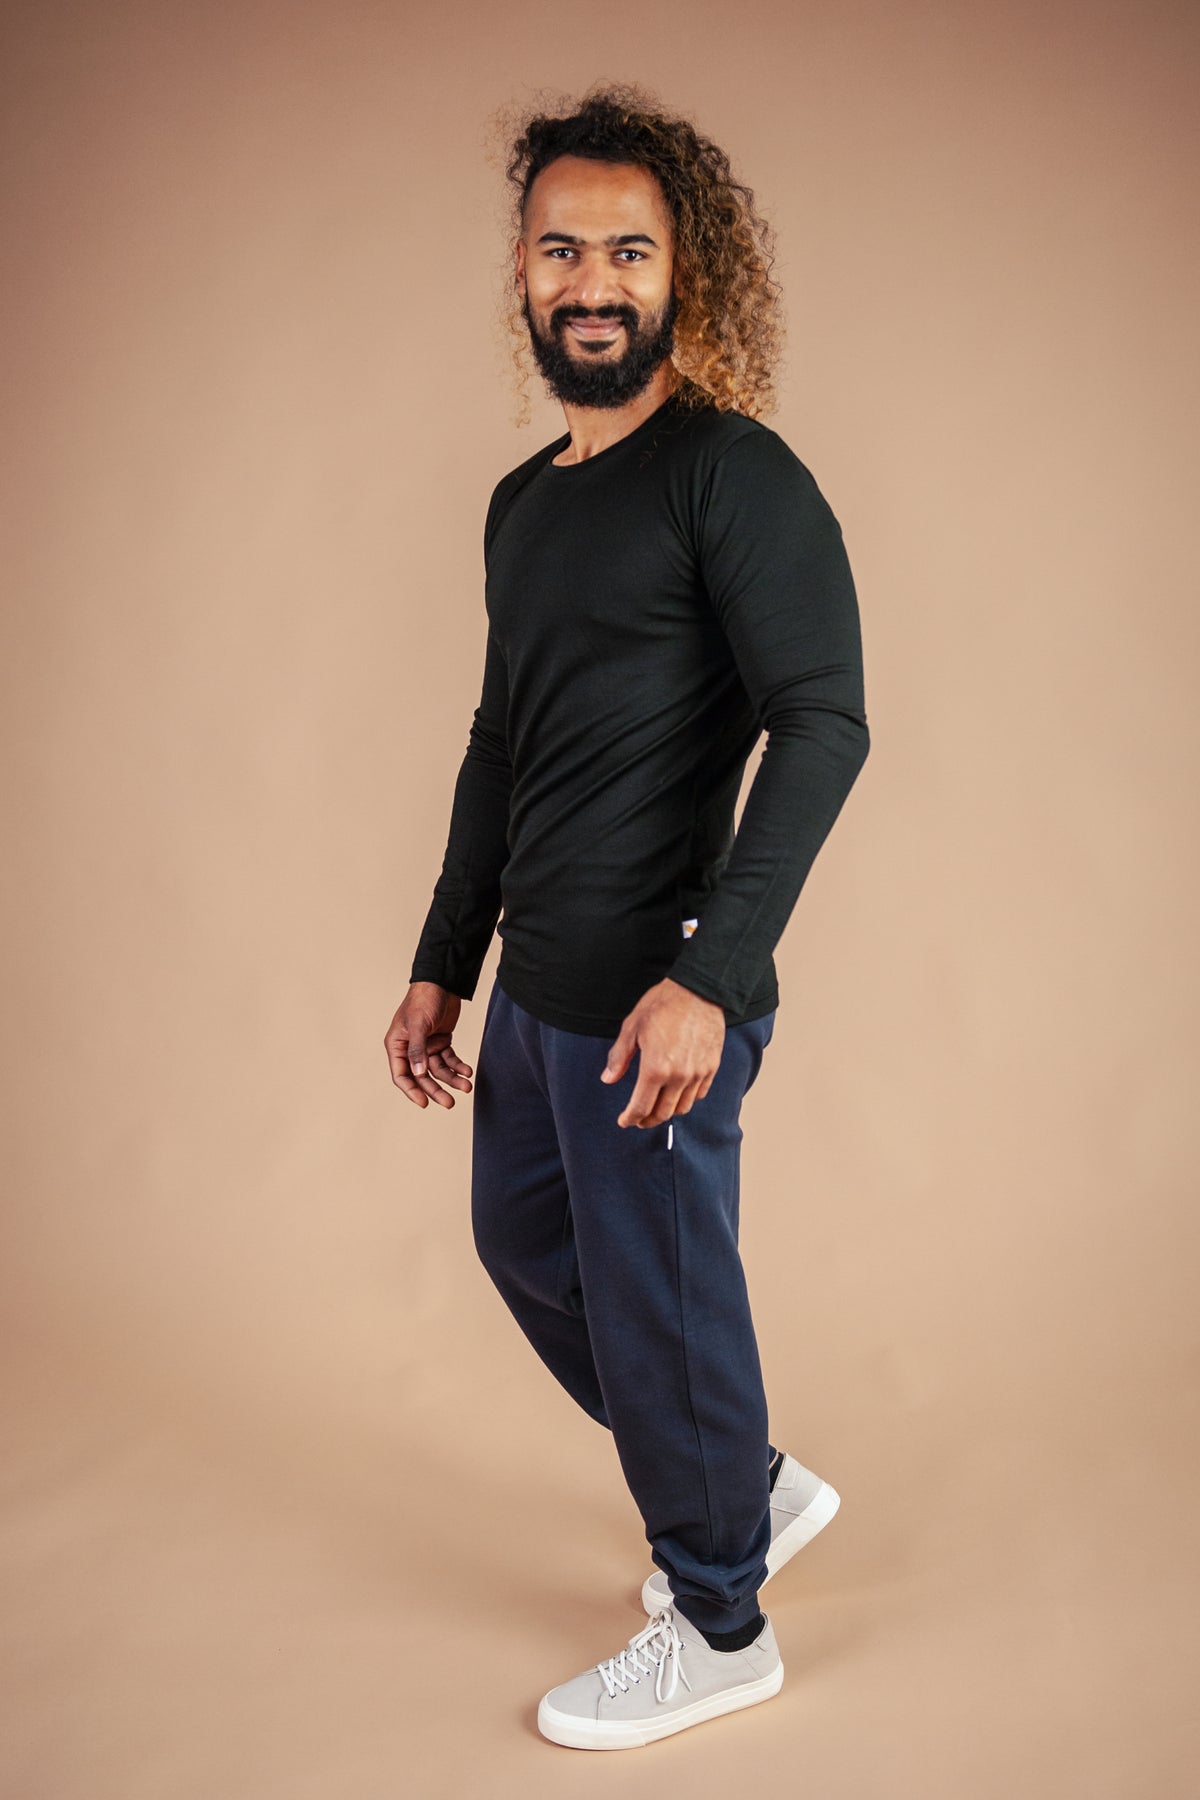 Male model wearing black marvel merino long sleeve tee against brown background